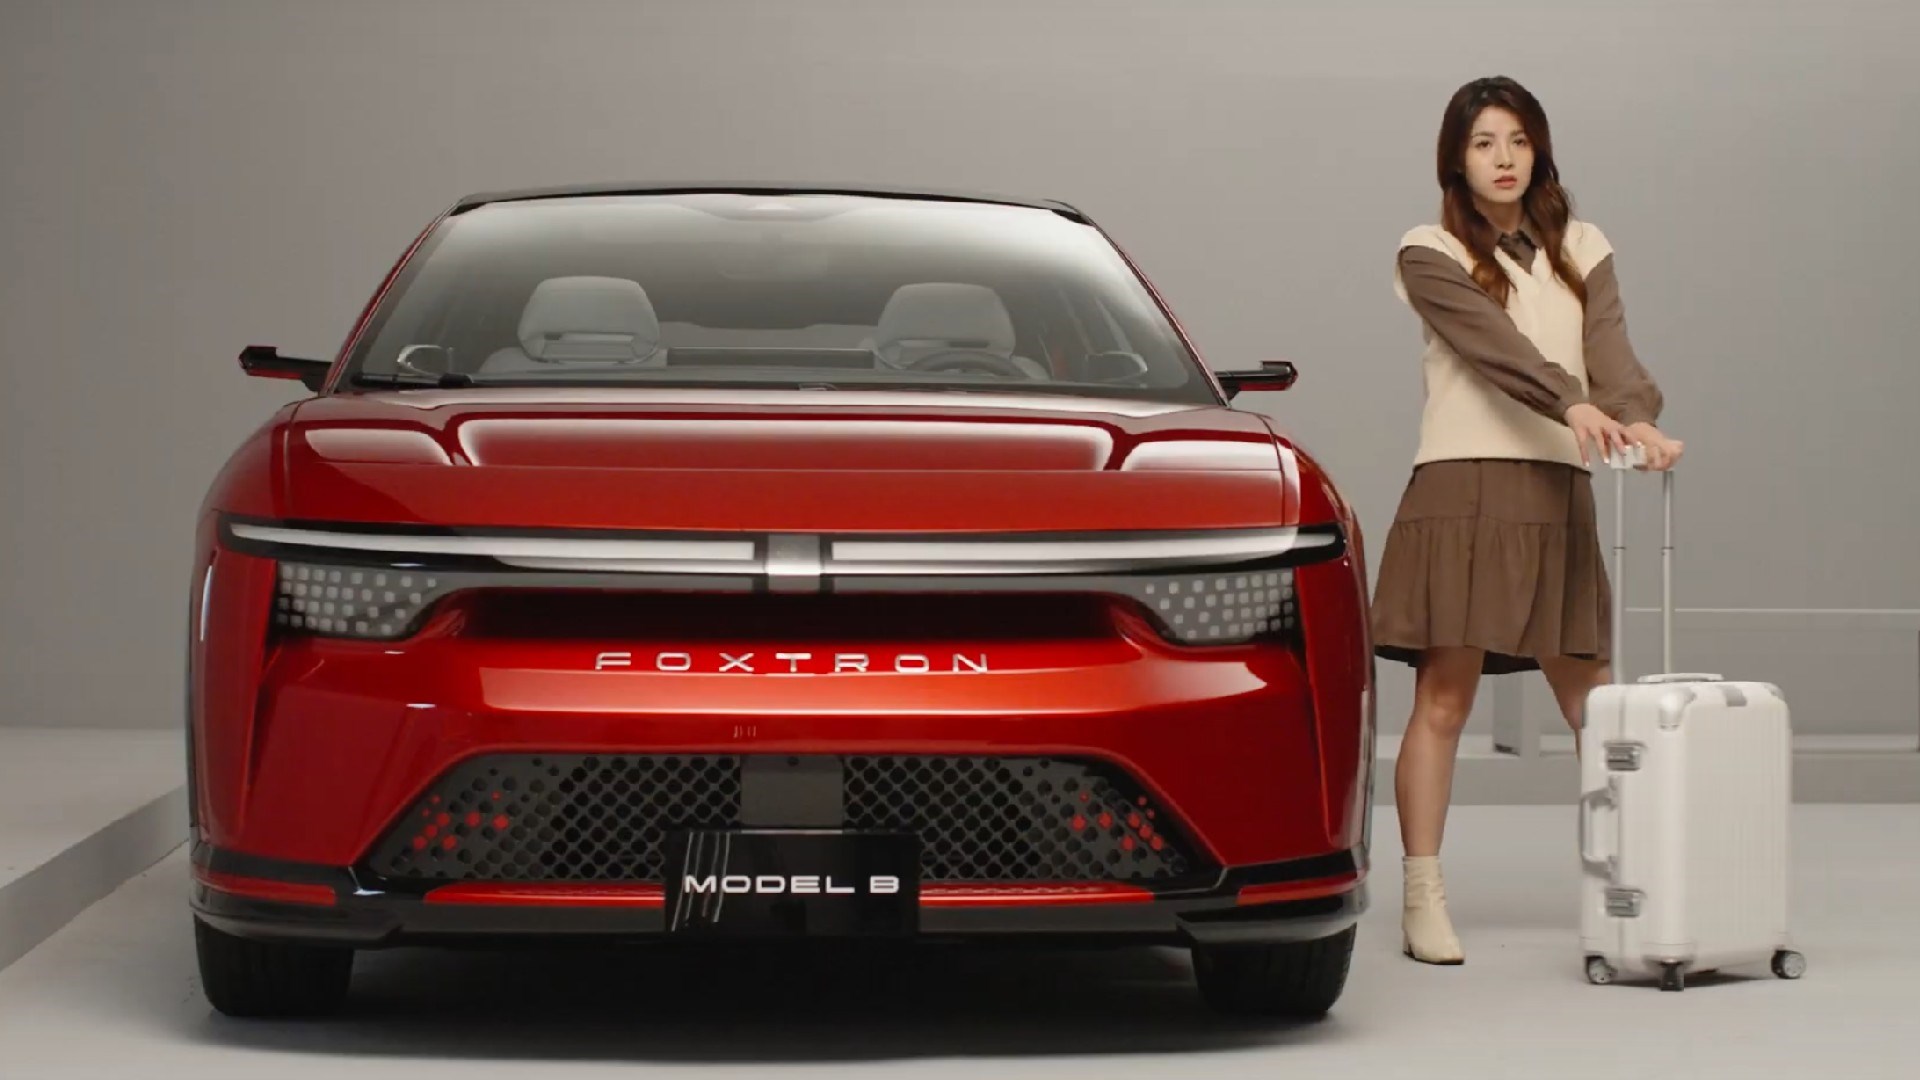 Foxconn'un yeni elektrikli otomobili ortaya çıkıyor: Model B